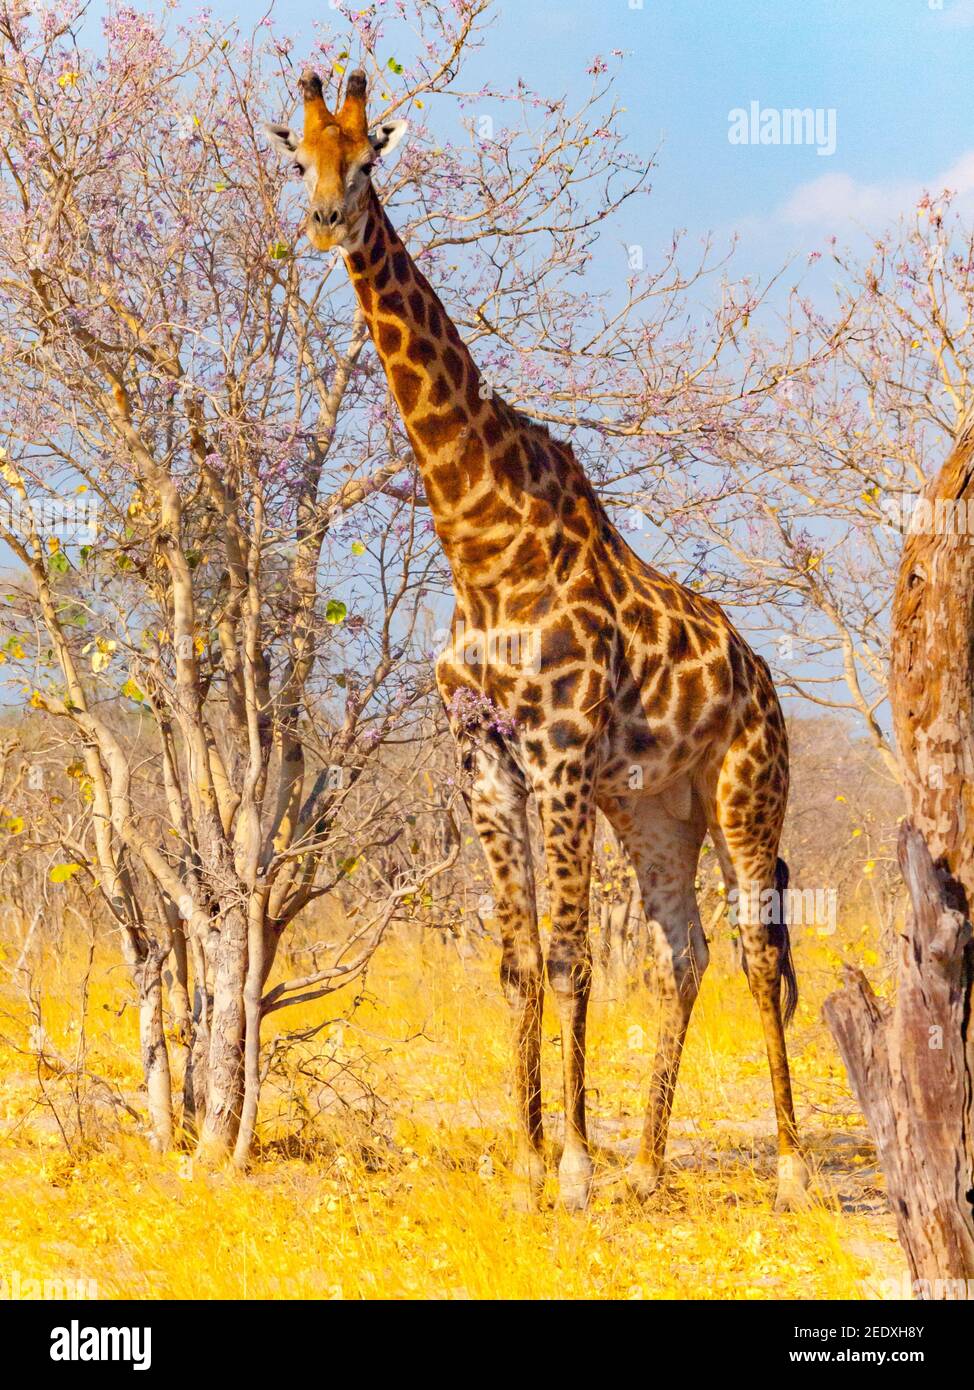 Giraffe in african savanna Stock Photo